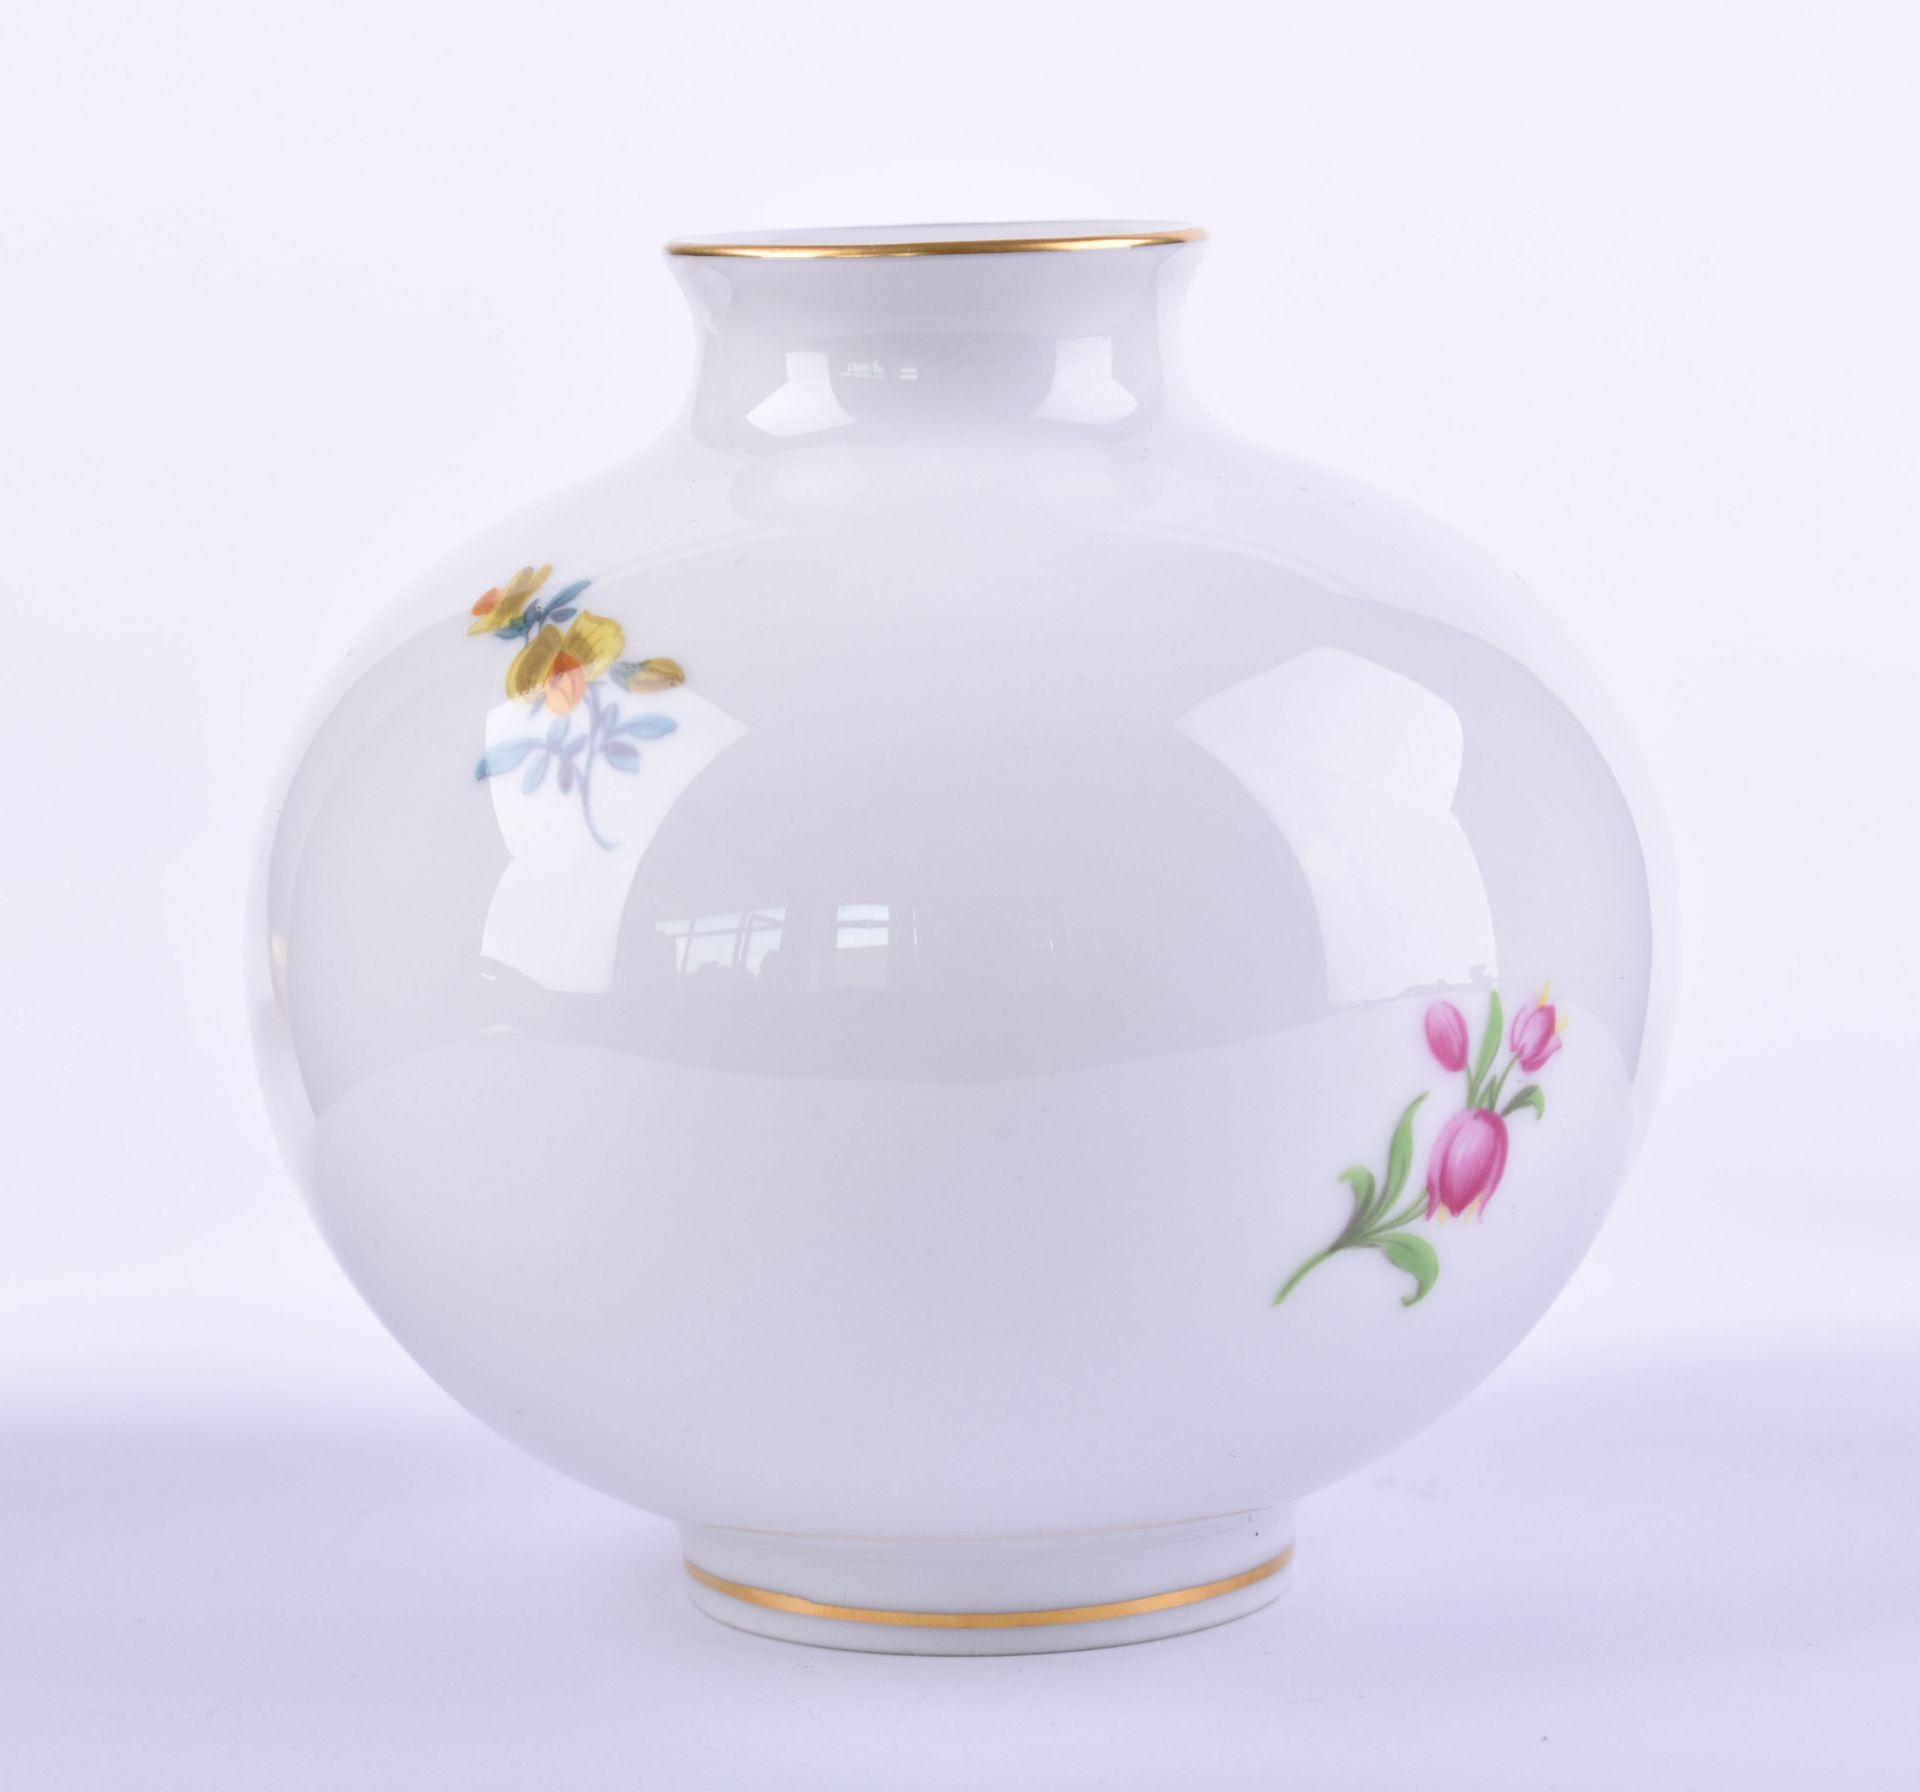  Spherical vase Meissen  - Image 2 of 4